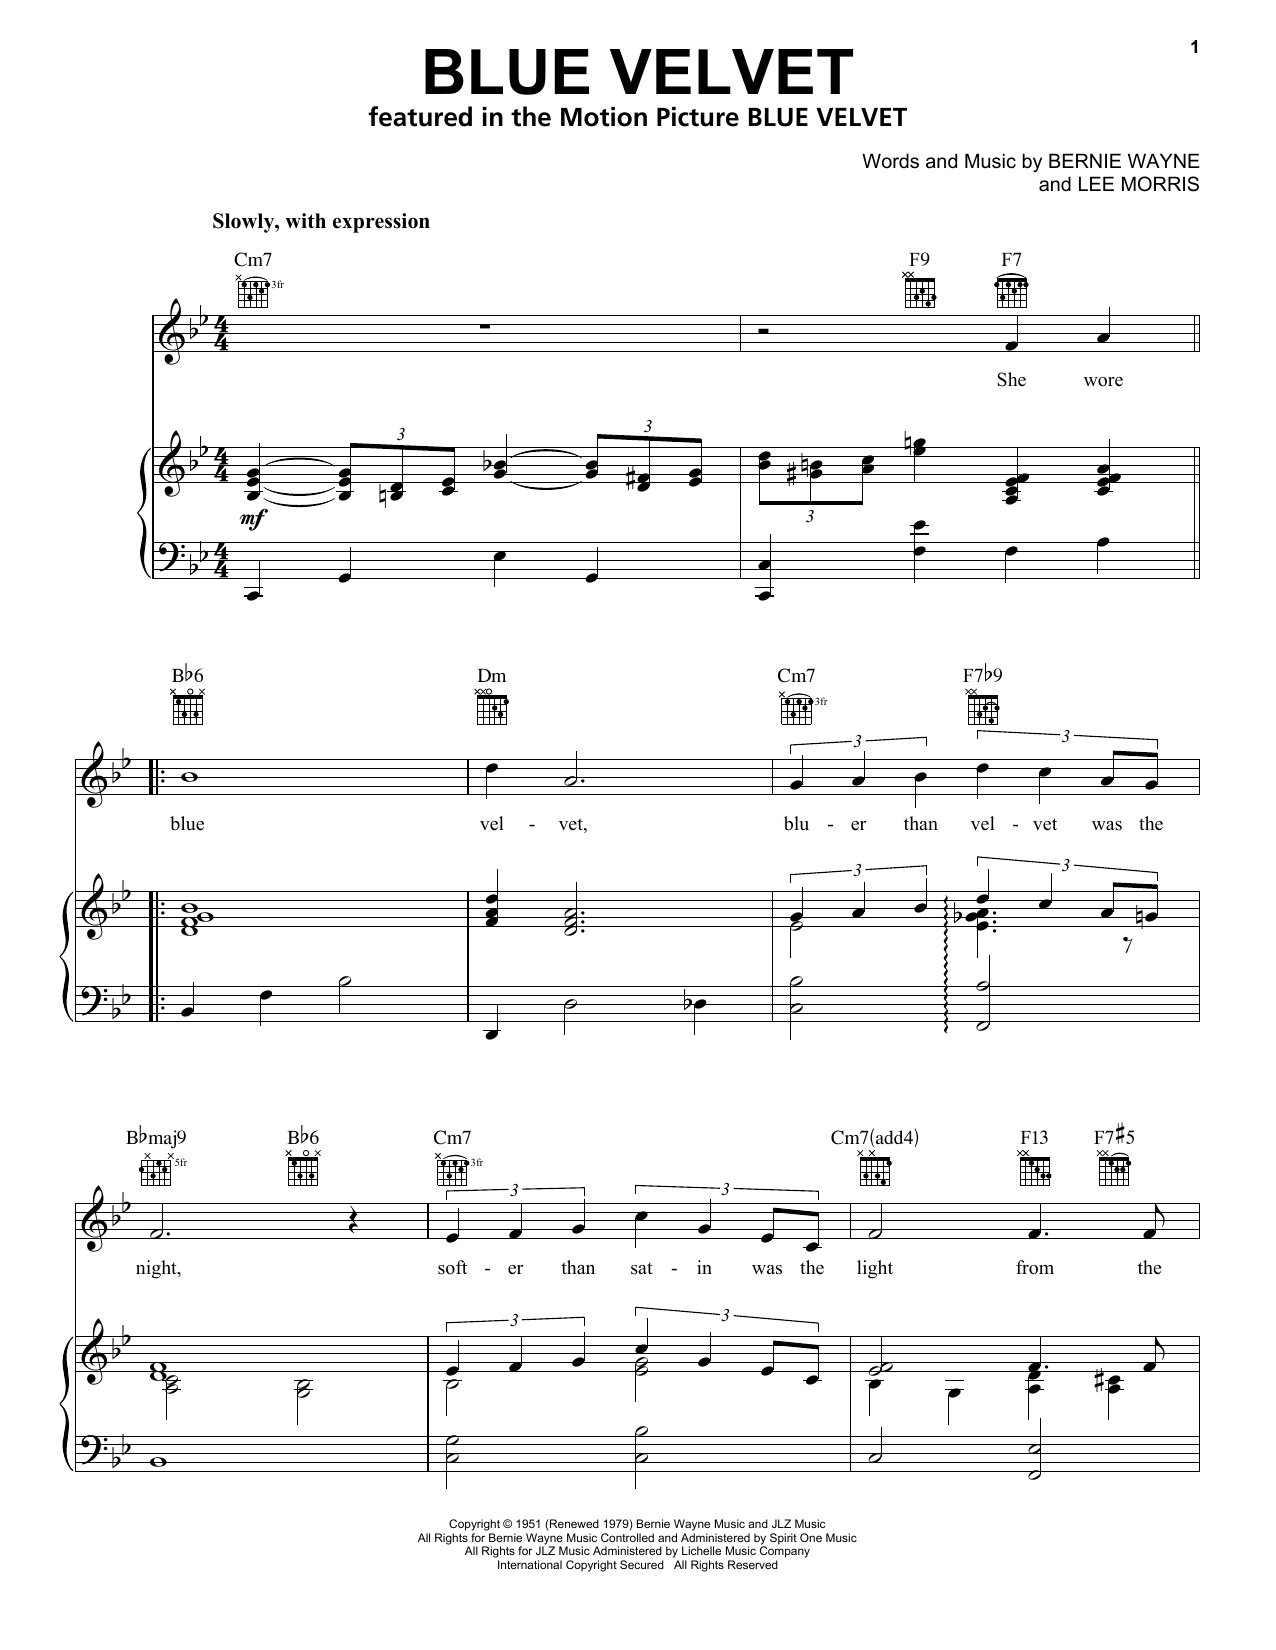 Bobby Vinton Blue Velvet Sheet Music Notes & Chords for Beginner Piano - Download or Print PDF